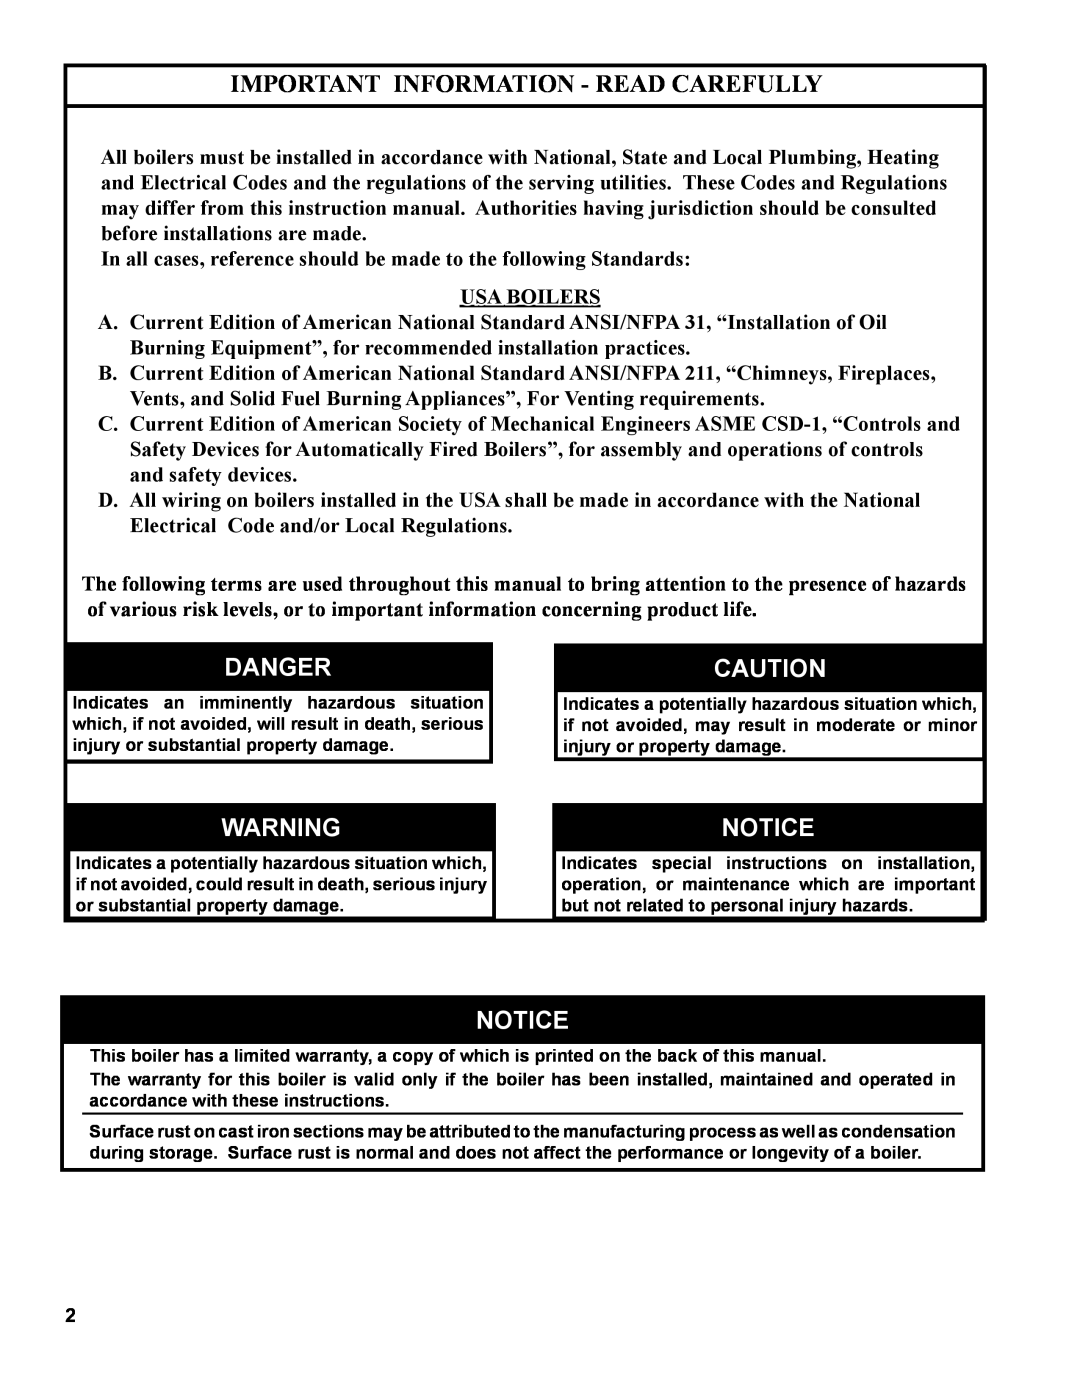 Burnham MST629, MST288, MST396, MST513 manual Important Information - Read Carefully, Danger 